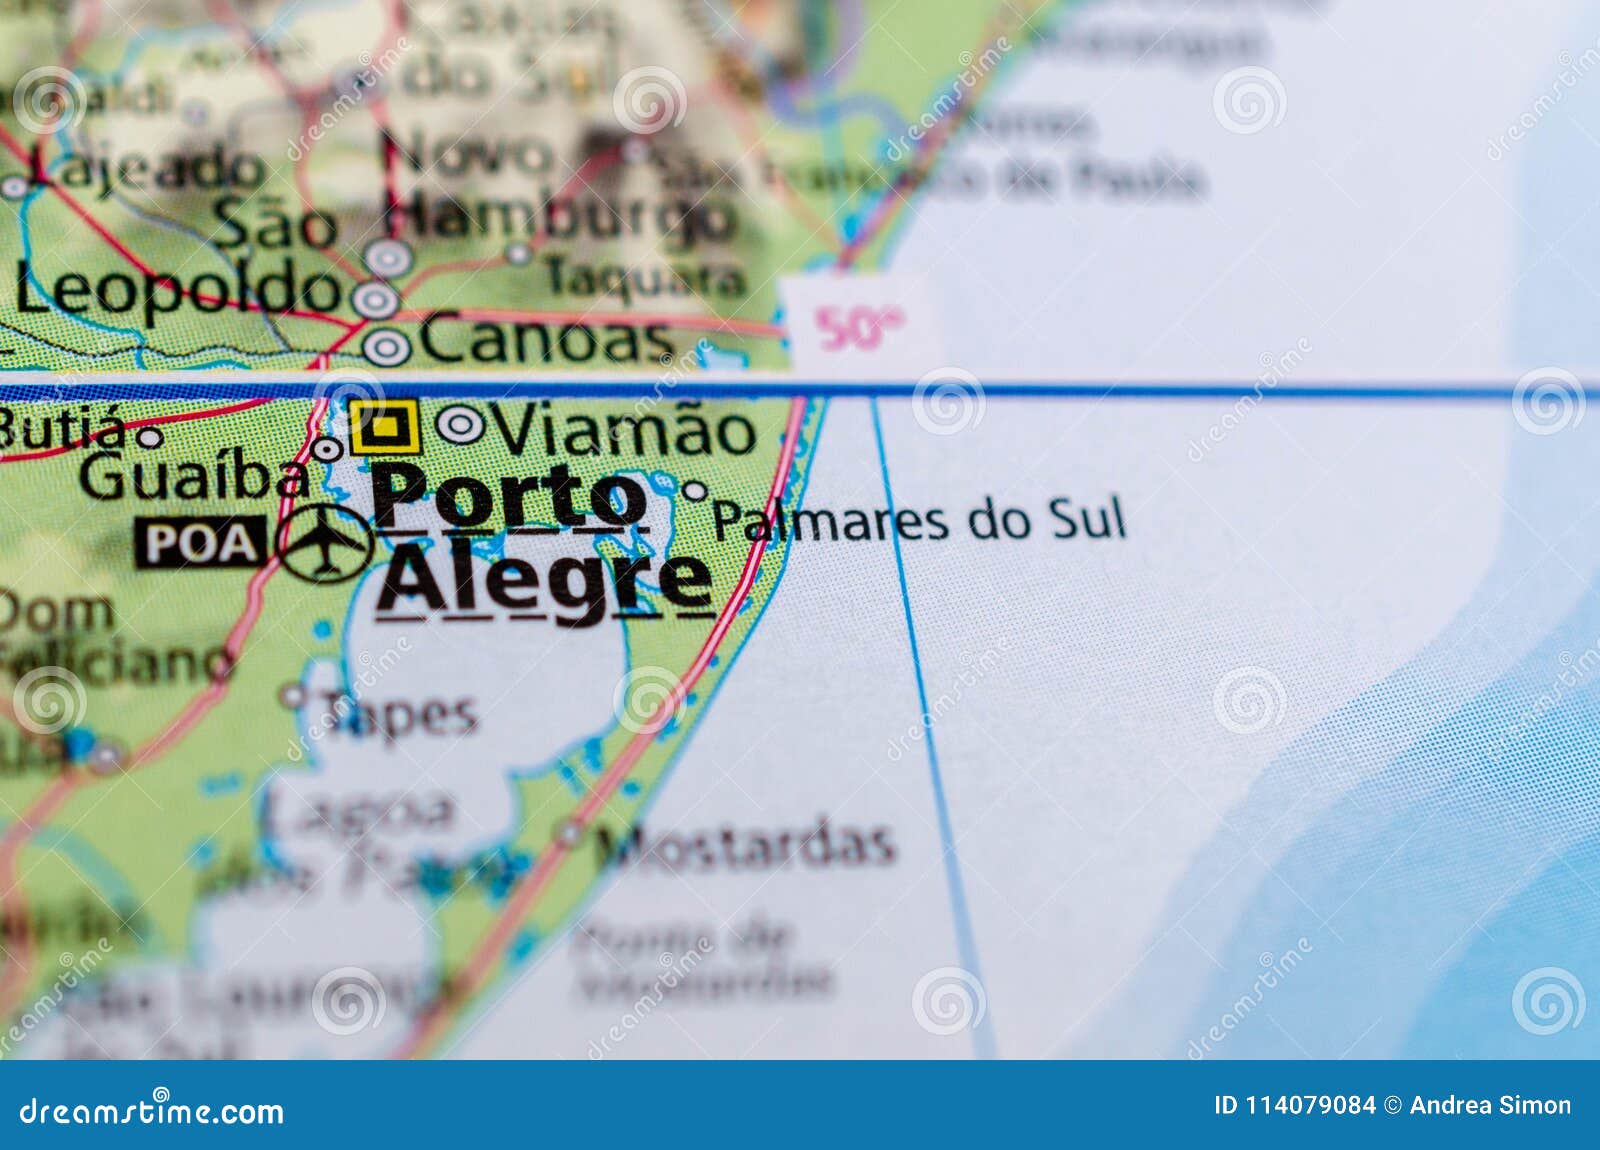 porto alegre on map